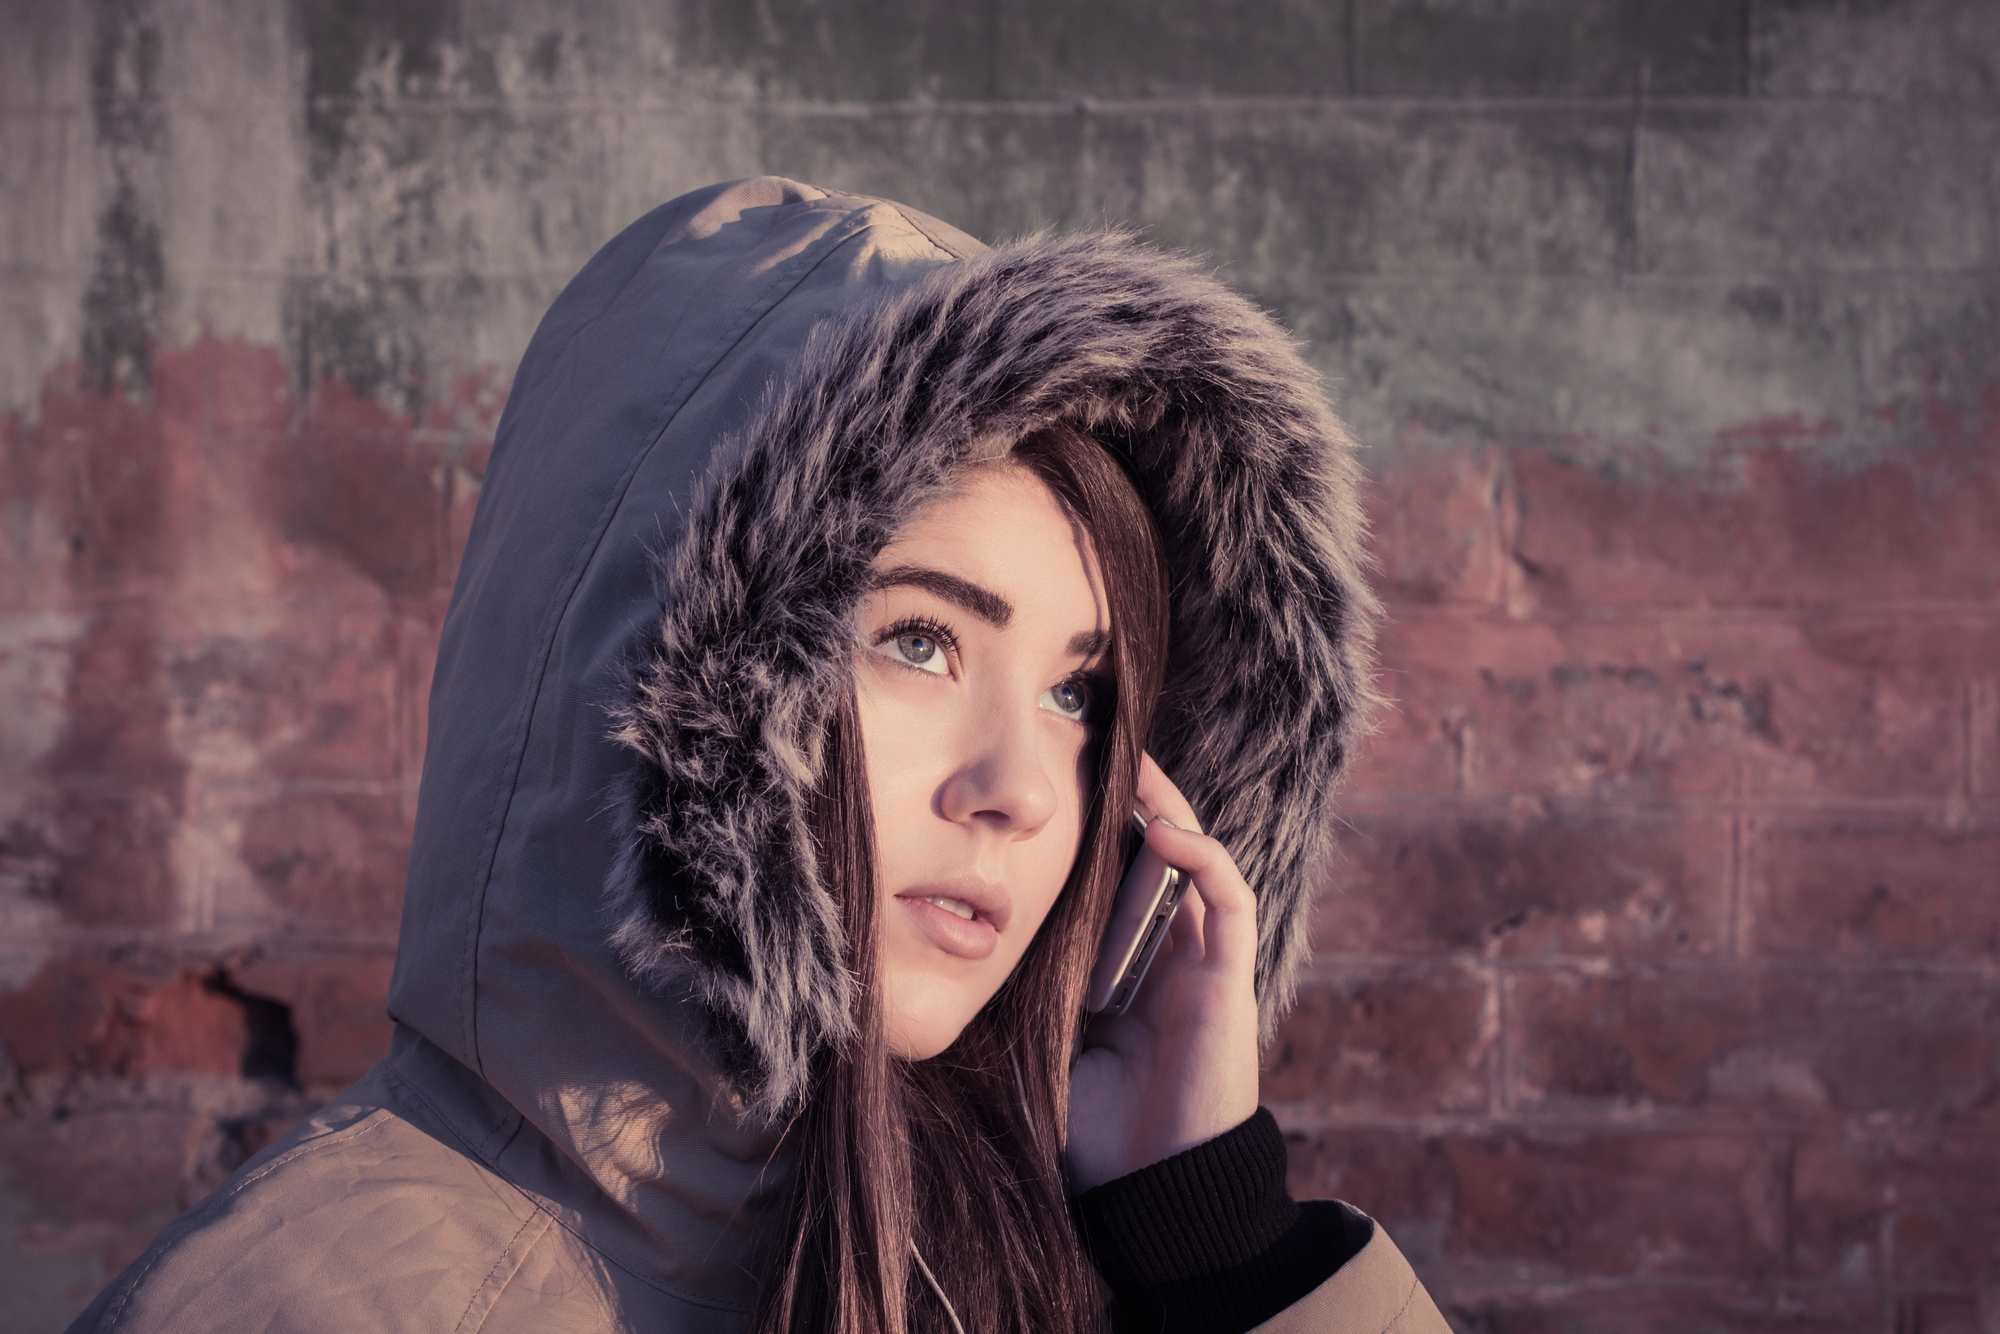 Portrait of a teenage girl outdoor wearing winter coat